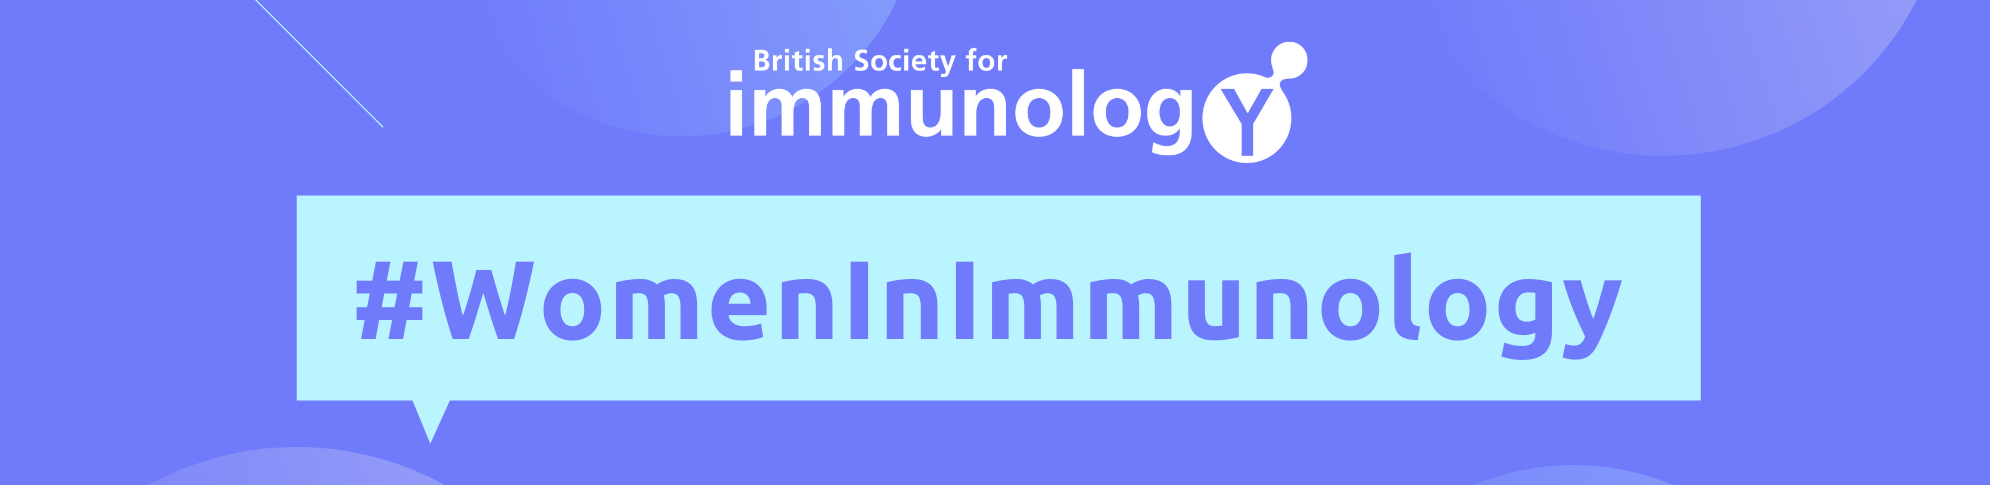 Women in immunology banner